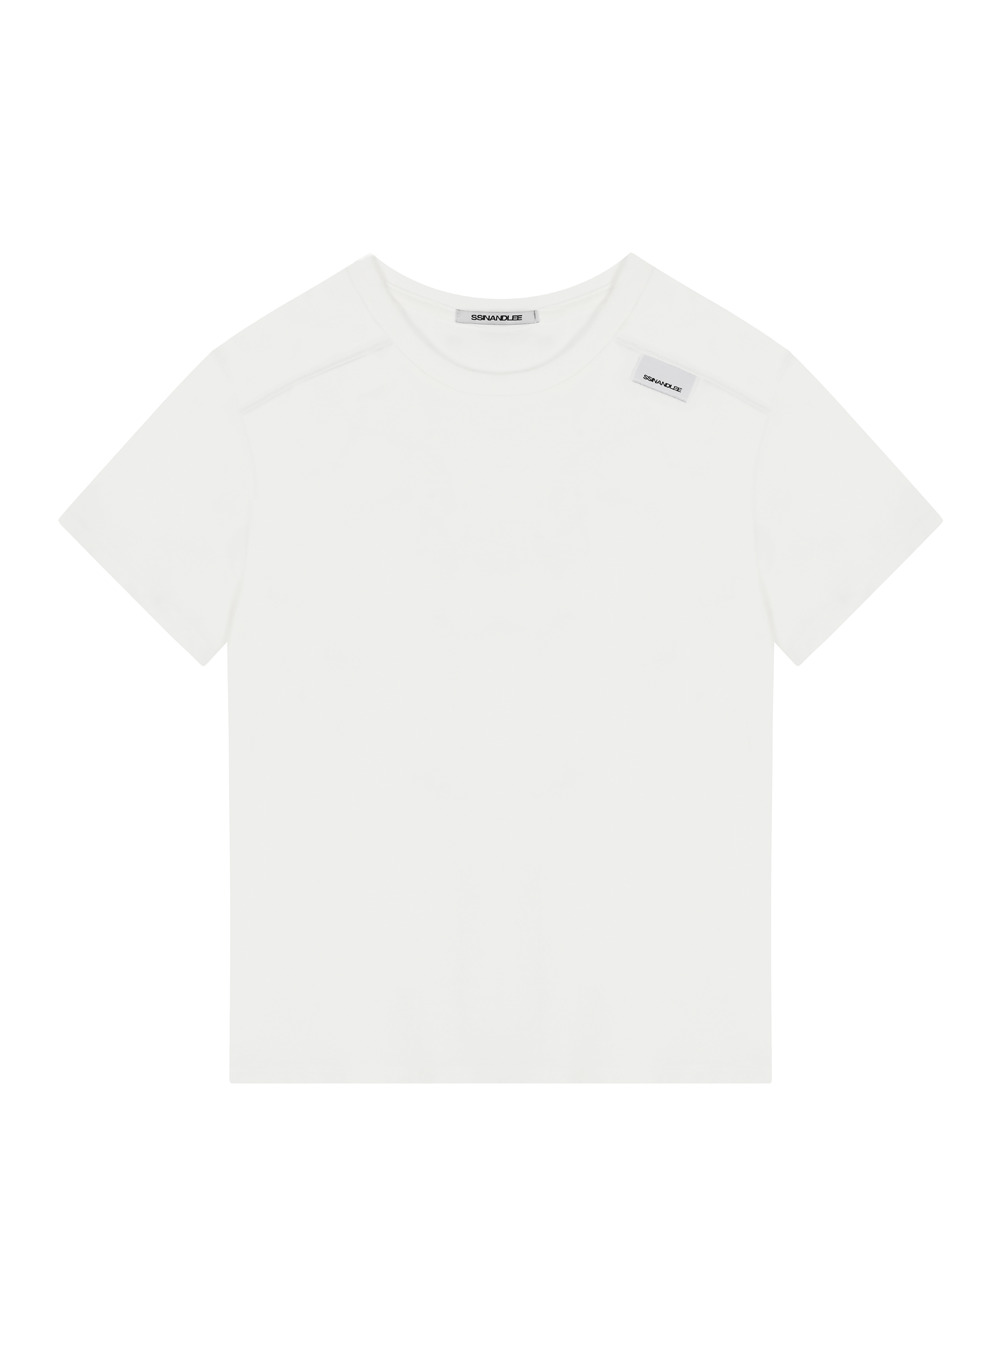 에센셜 숄더 라벨 티셔츠 화이트Essential shoulder label T-shirt white